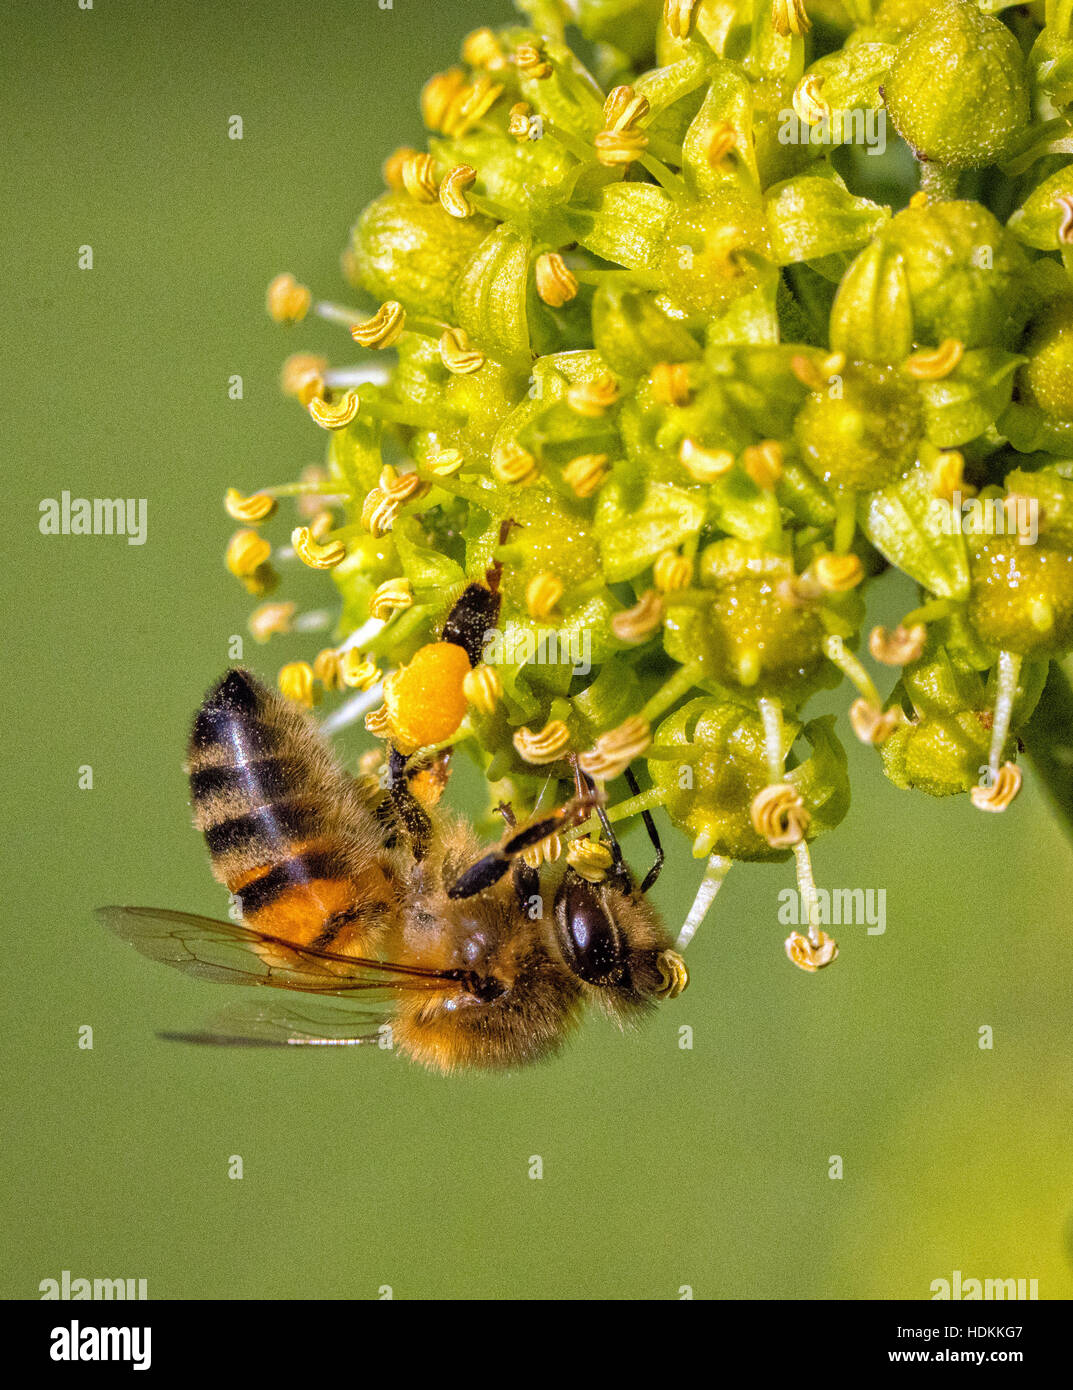 Oeste de miel de abejas Apis mellifera alimentar y recoger el polen de las flores de la hiedra Foto de stock